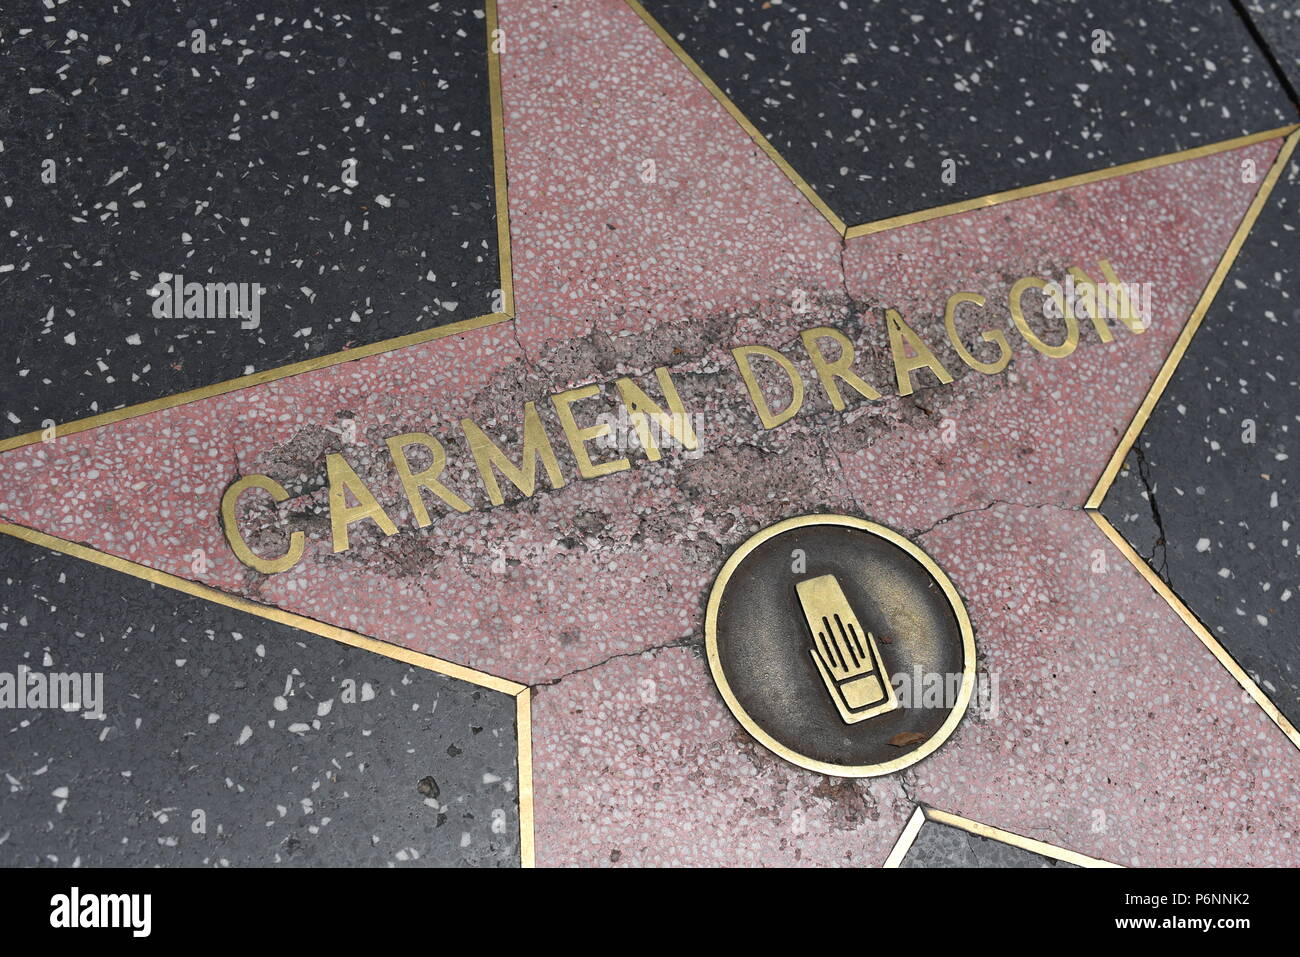 HOLLYWOOD, CA - 29 Giugno: Carmen Dragon stella sulla Hollywood Walk of Fame in Hollywood, la California il 29 giugno 2018. Foto Stock